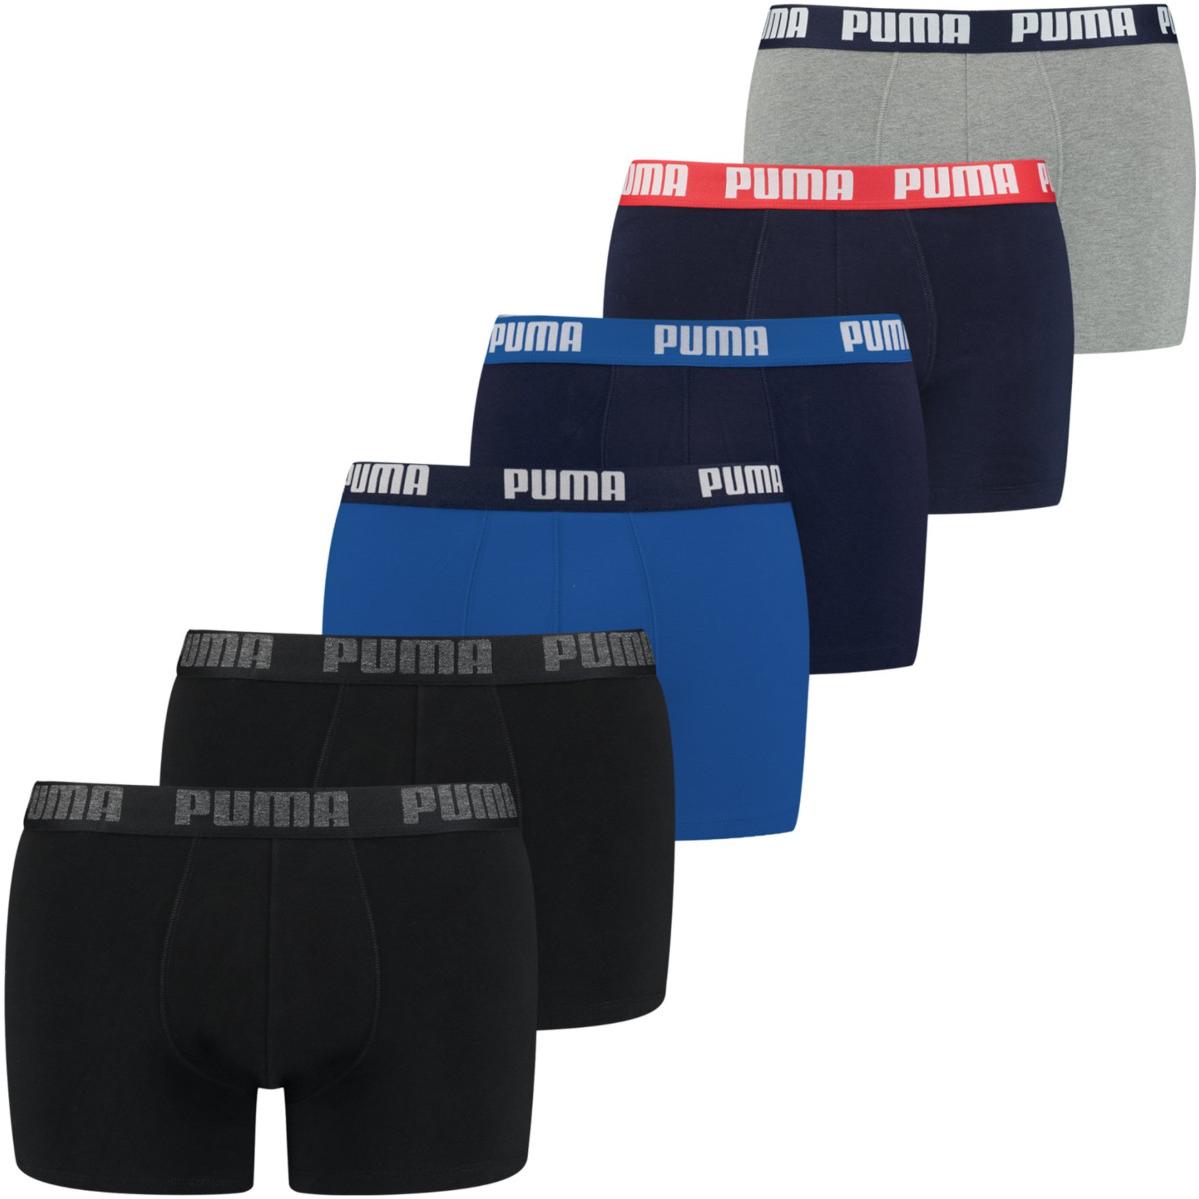 Pánské boxerky Puma Basic (6 kusů)